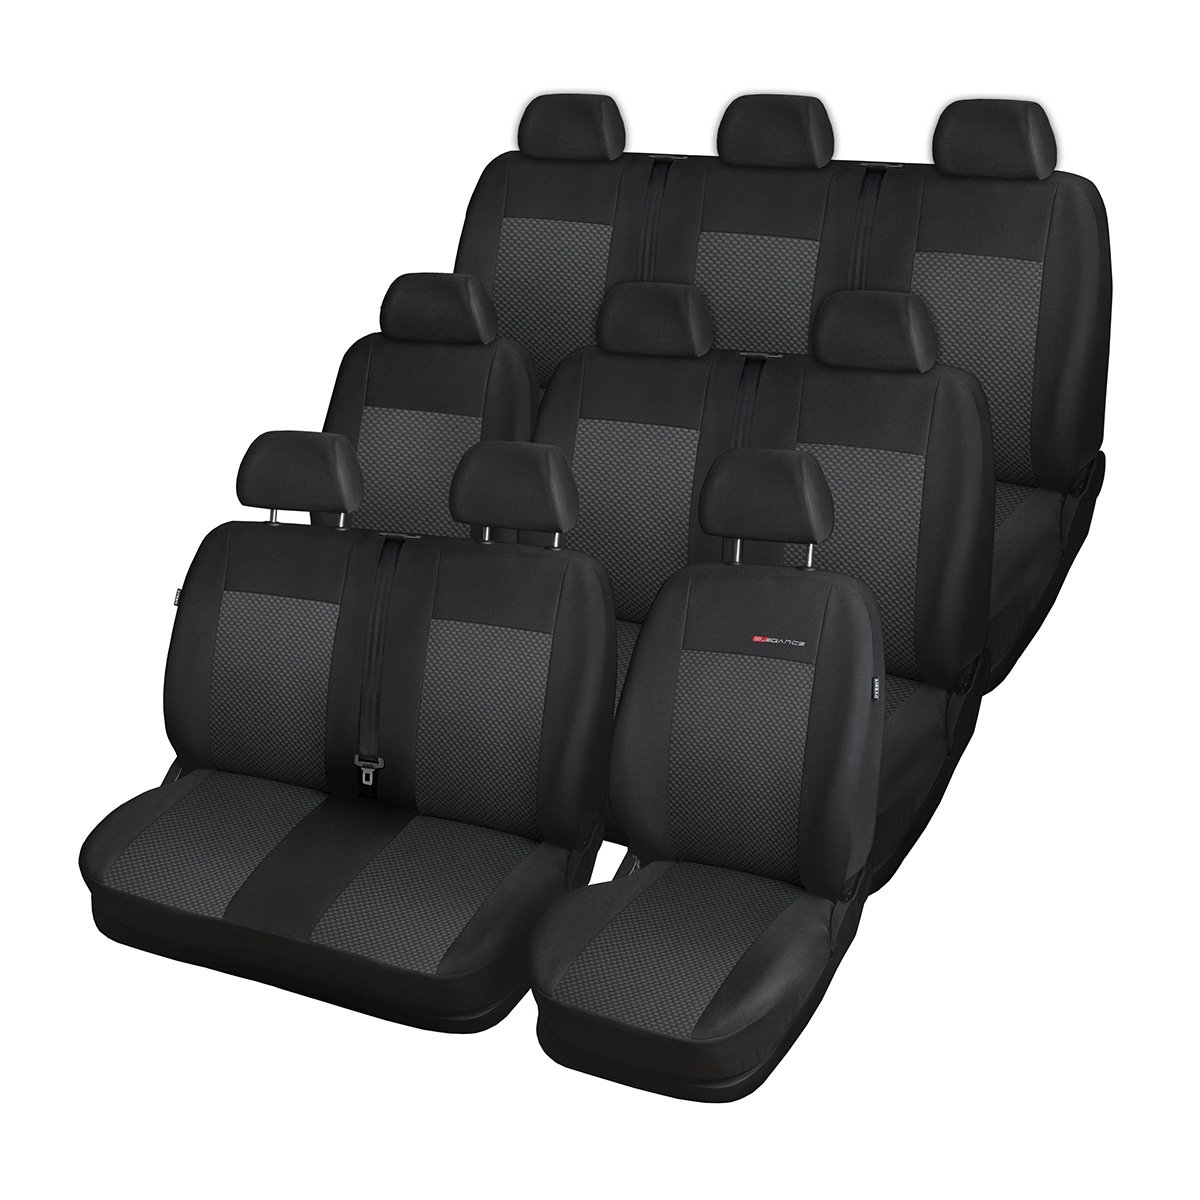 Mossa - Maßgeschneiderte Sitzbezüge Auto kompatibel mit Volkswagen Transporter T6 Van (2015-2019) - für DREI Reihen - Autositzbezüge Schonbezüge für Autositze - E3 von Mossa